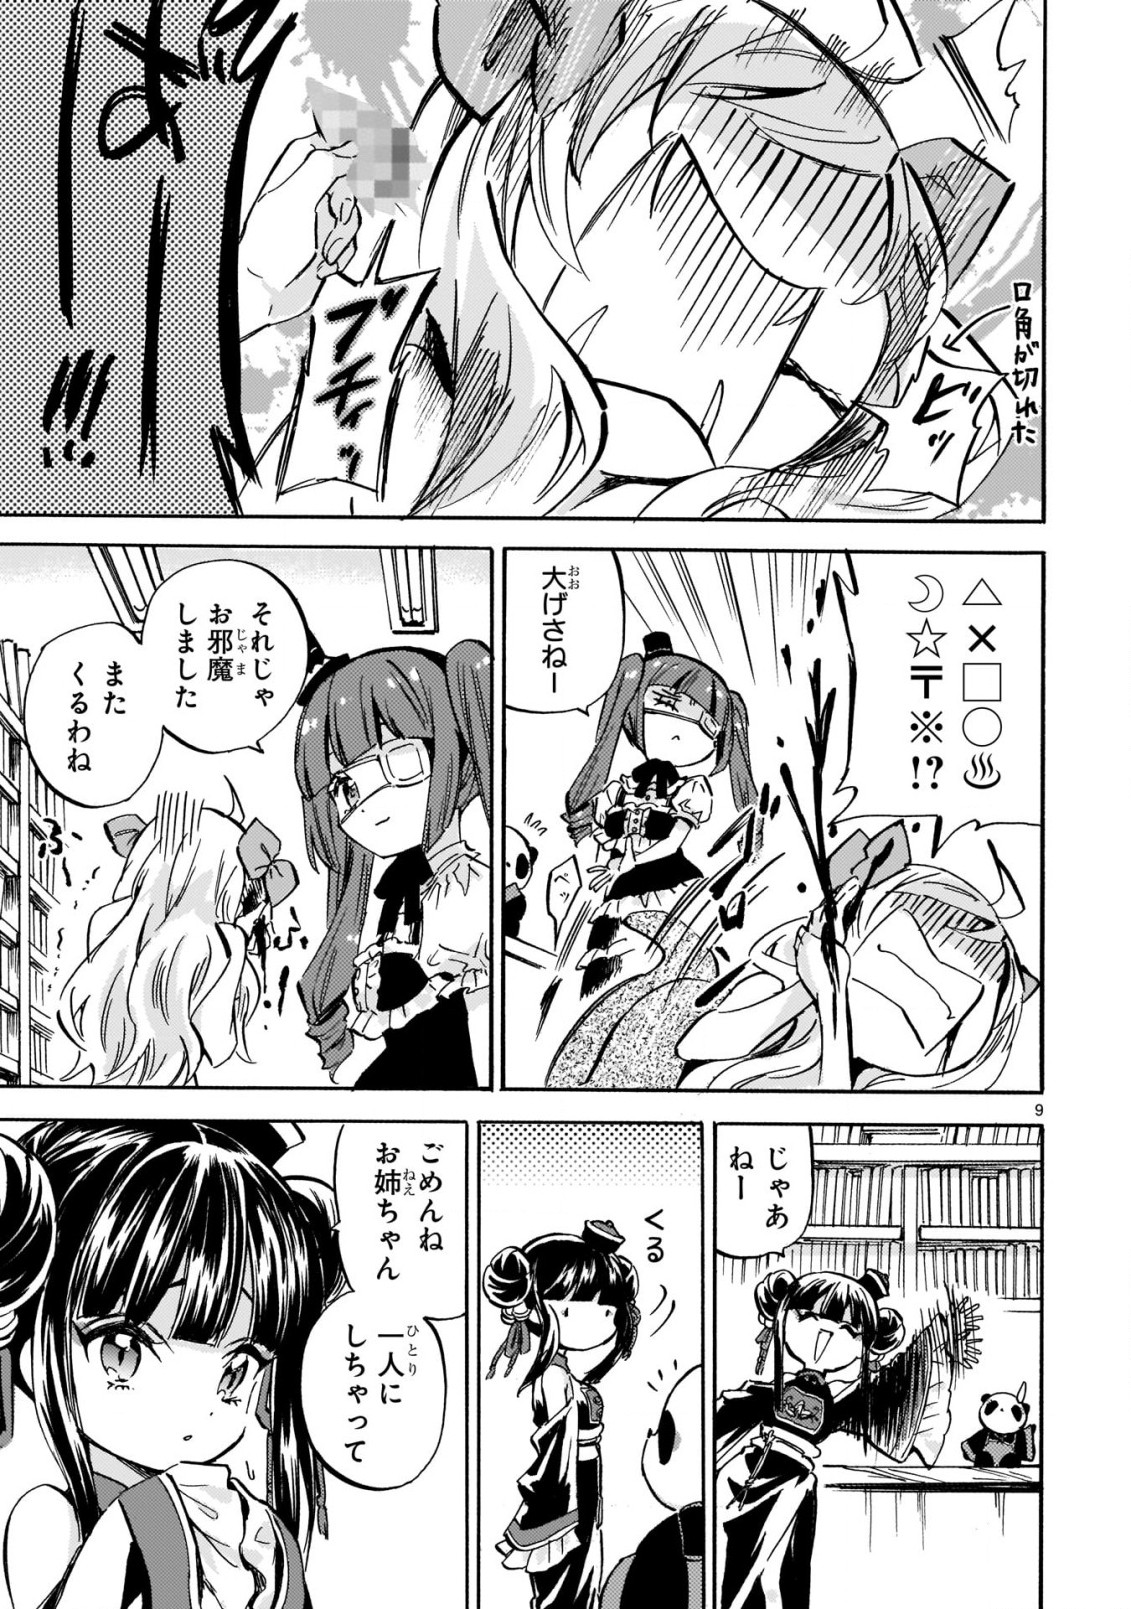 Jashin-chan Dropkick - Chapter 217 - Page 9